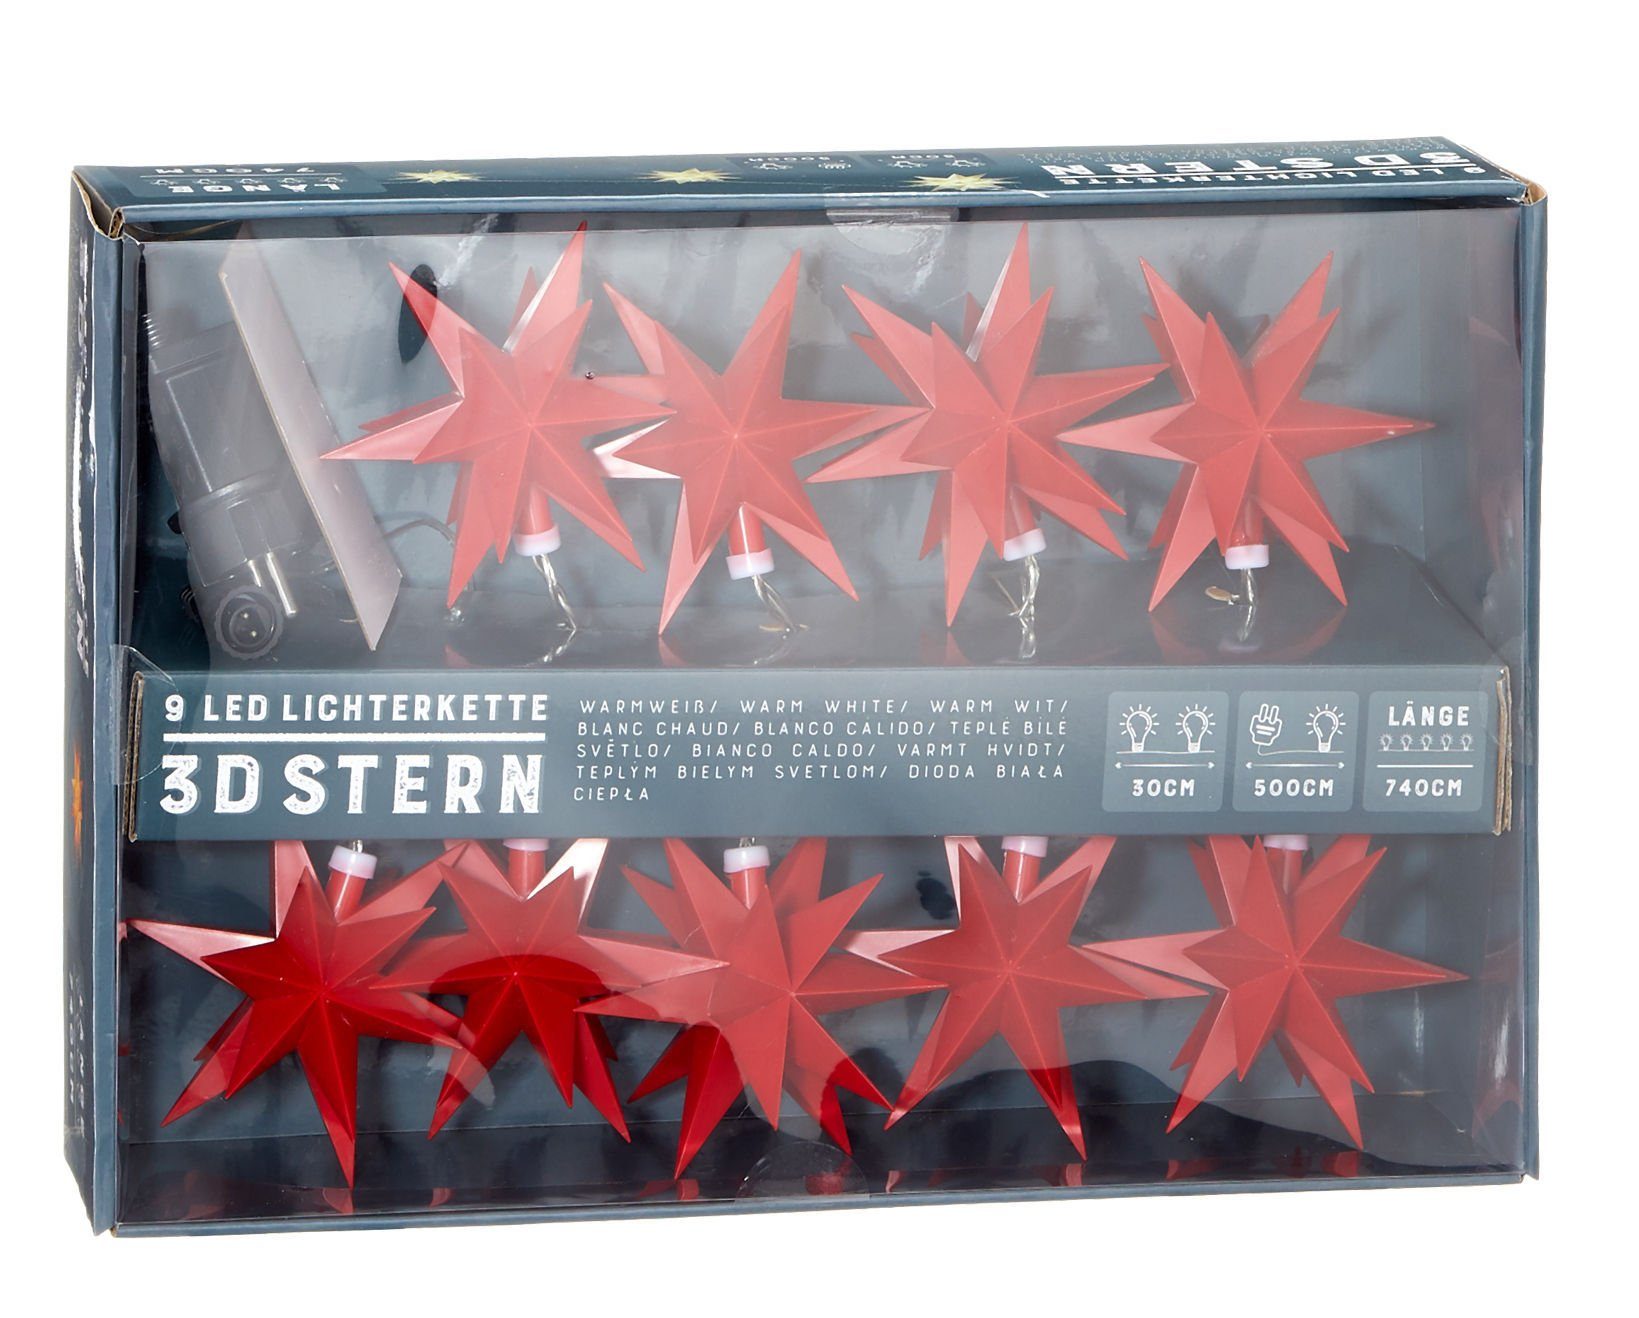 Spetebo LED-Girlande 3D Stern Lichterkette mit 9 LED - Sterne in rot, für den Außenbereich geeignet